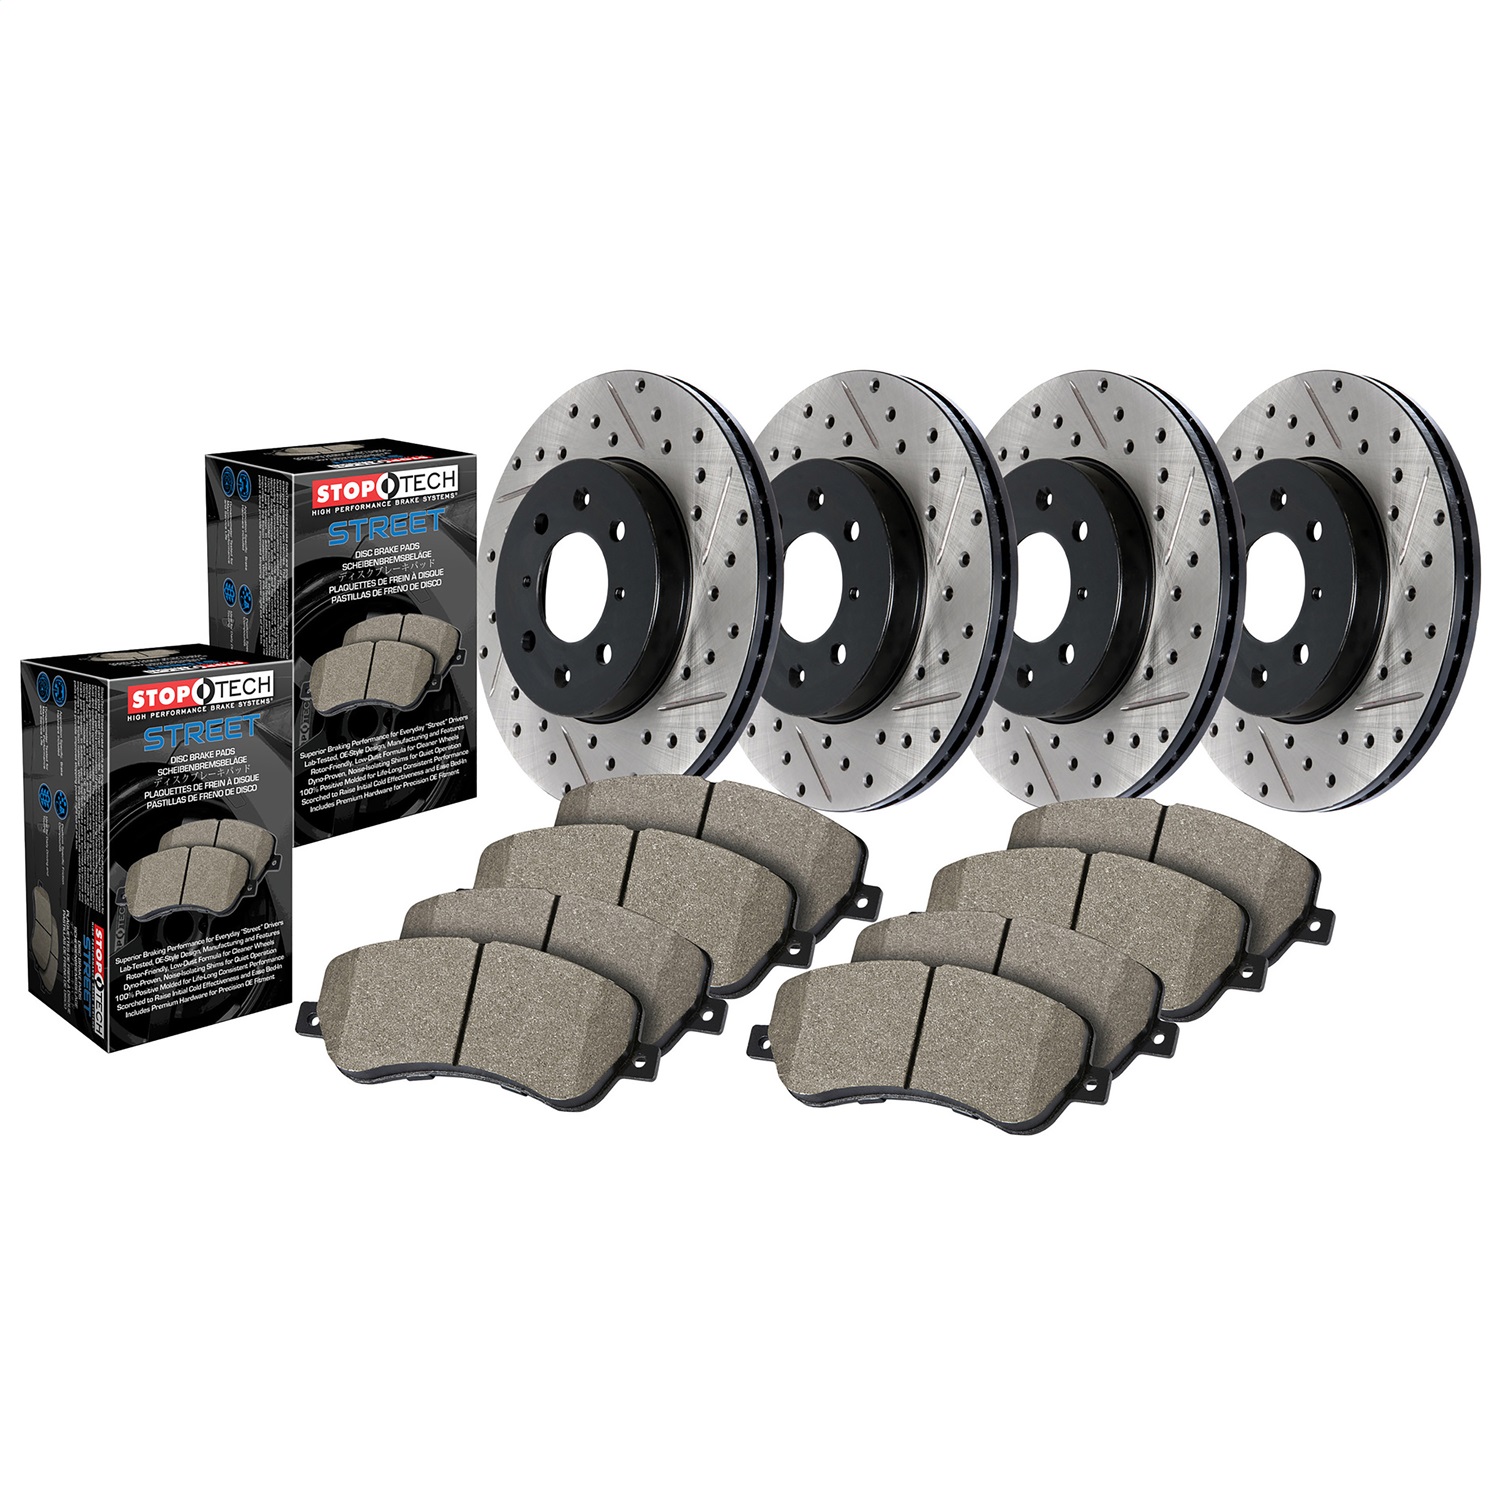 StopTech 935.61079 Disc Brake Upgrade Kit